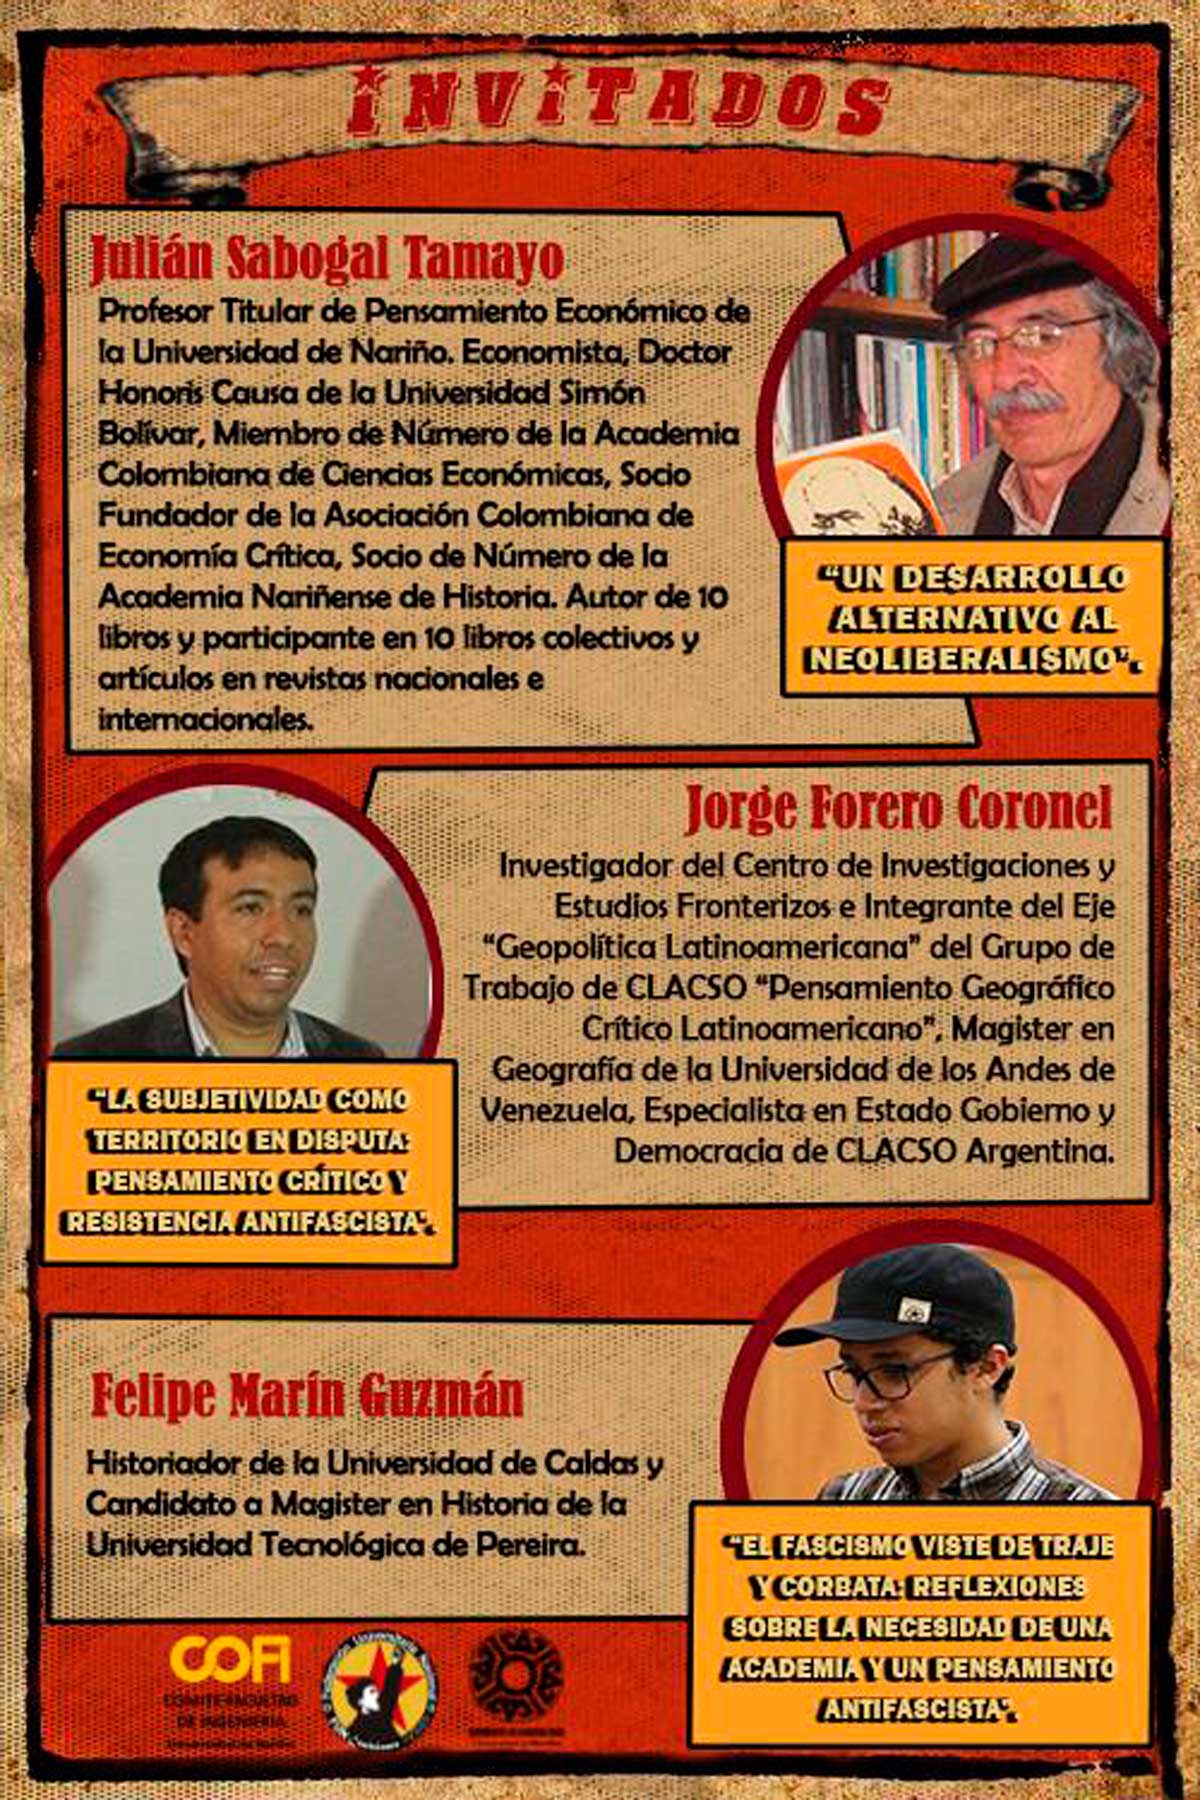 Ponentes invitados Conversatorio “Primera Línea de Académicos Antifascistas”: Julián Sabogal Tamayo, Jorge Forero Coronel y Felipe Marín Guzmán.